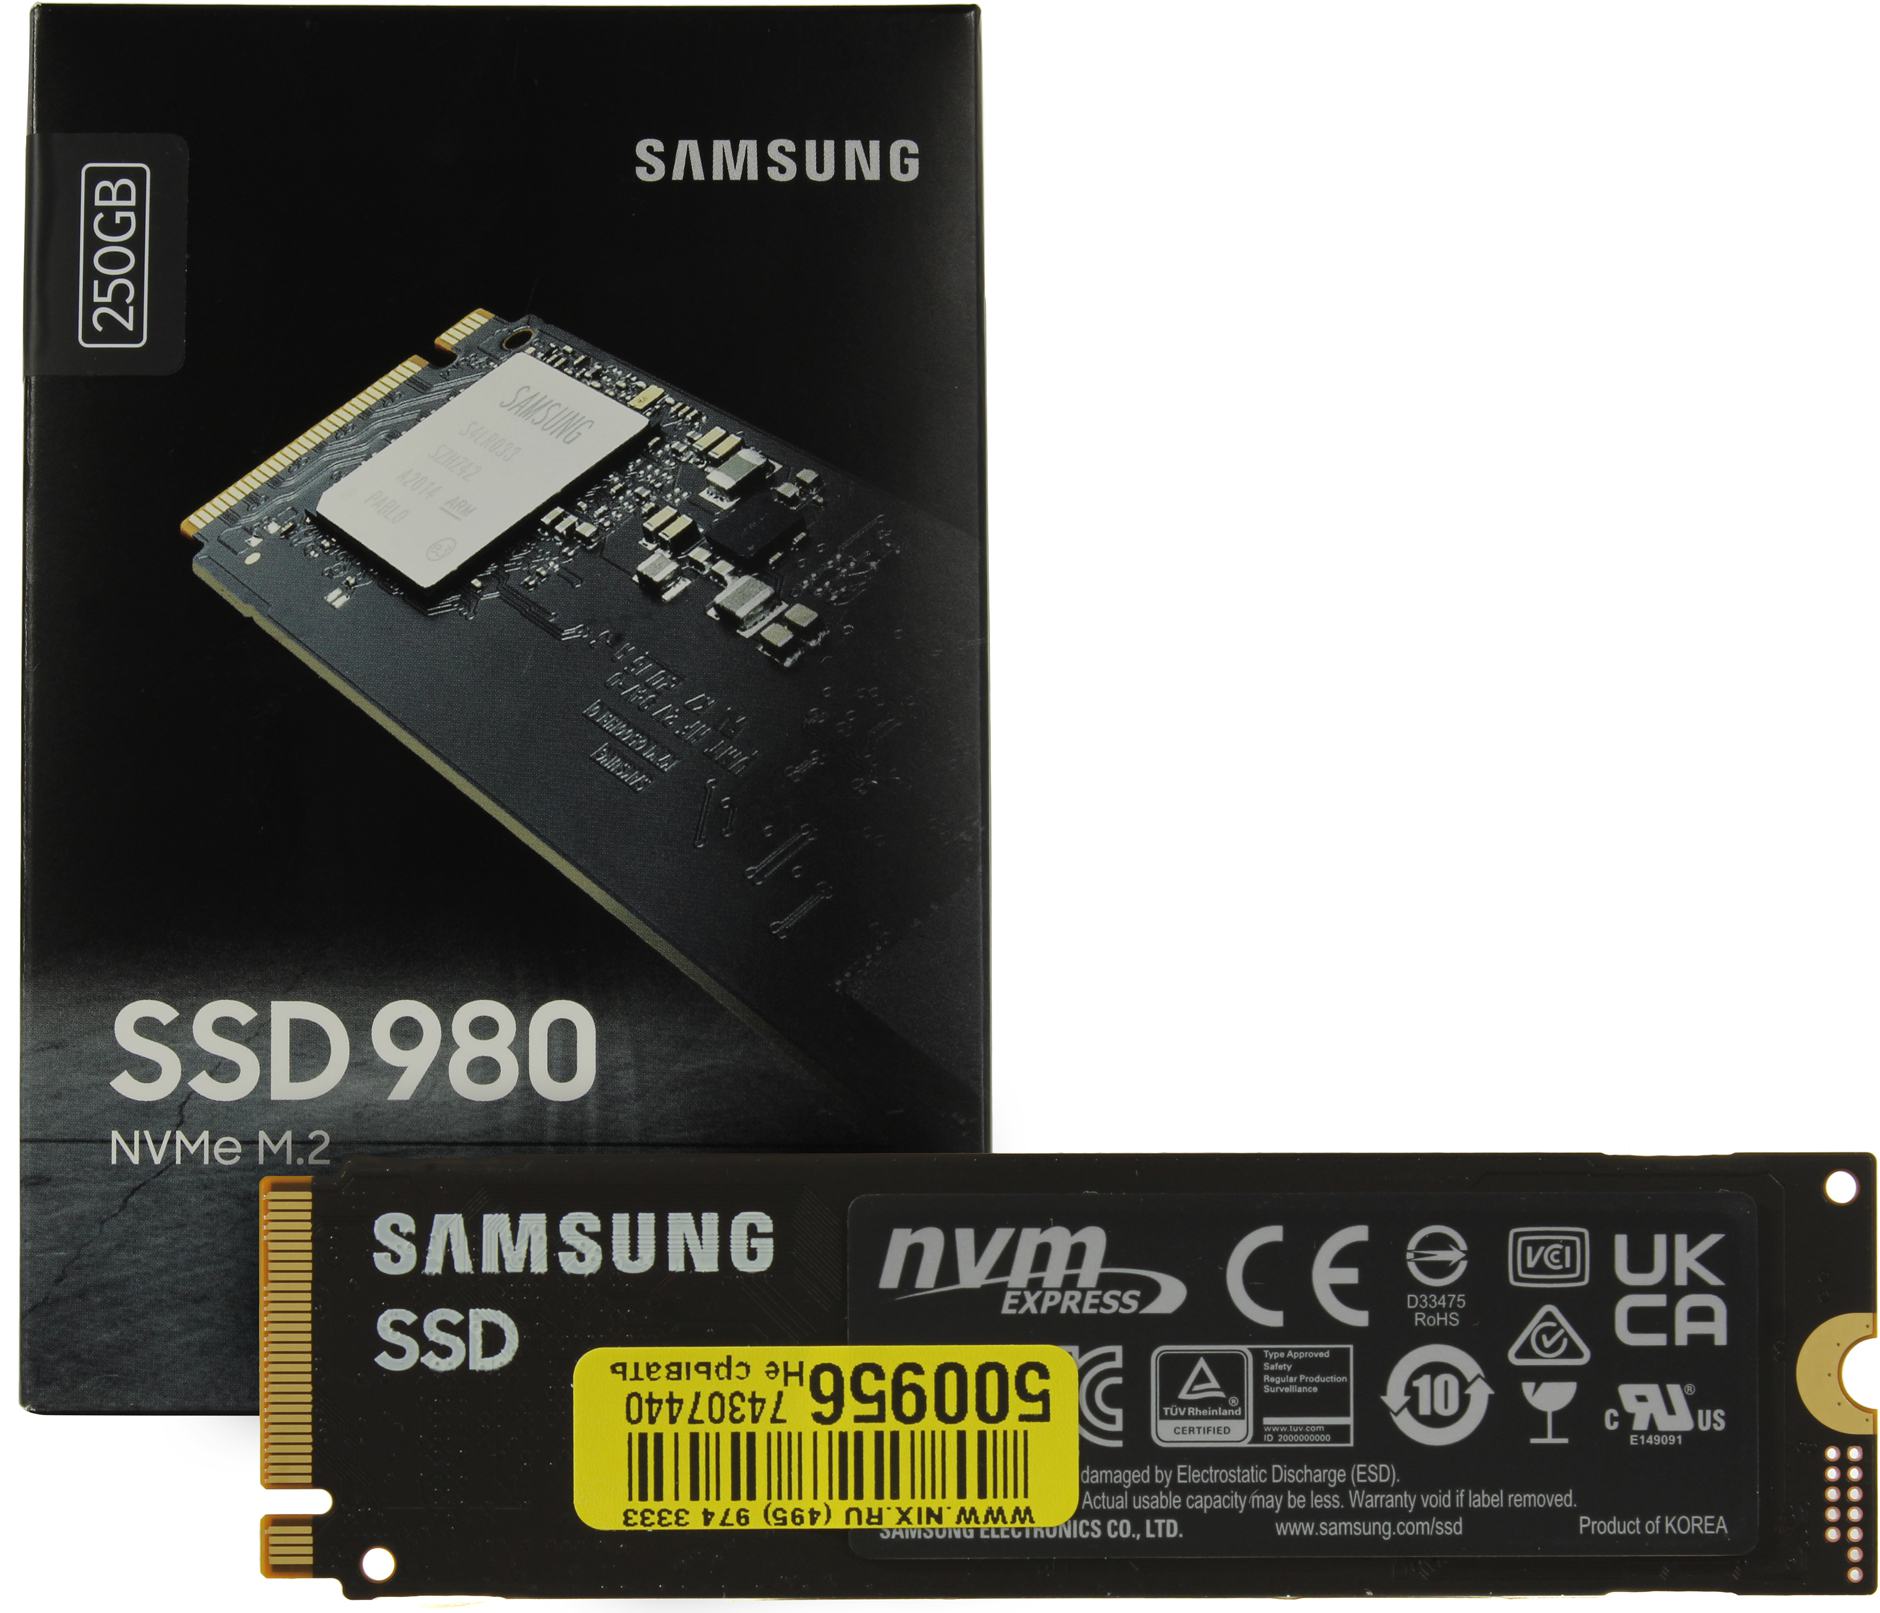 Ssd Samsung 980 250gb Mz V8v250bw